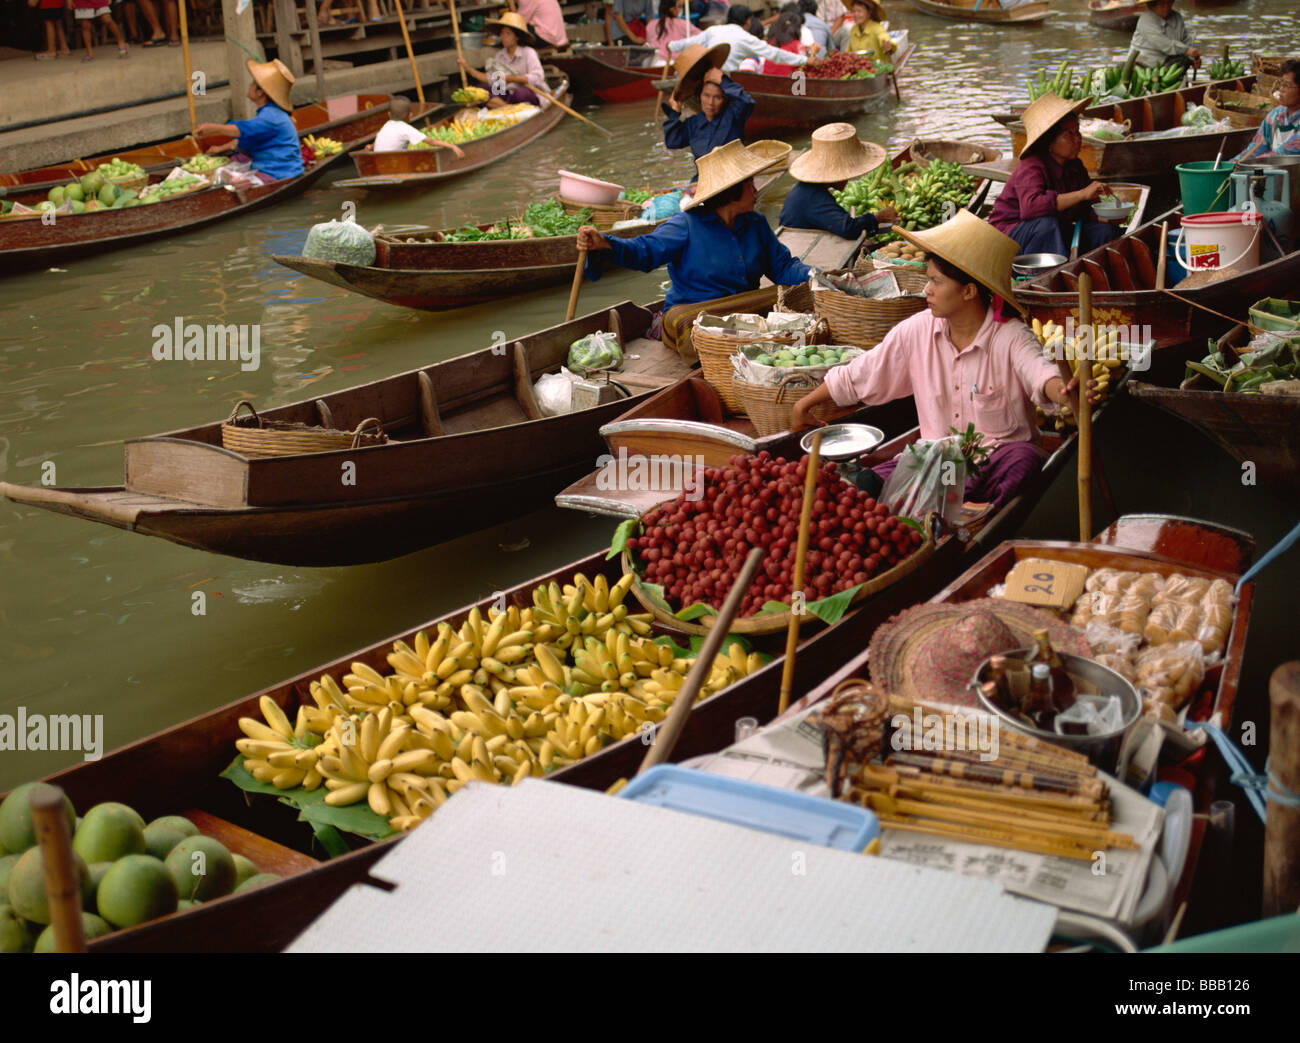 Damnoensaduak marché flottant, Thaïlande Banque D'Images